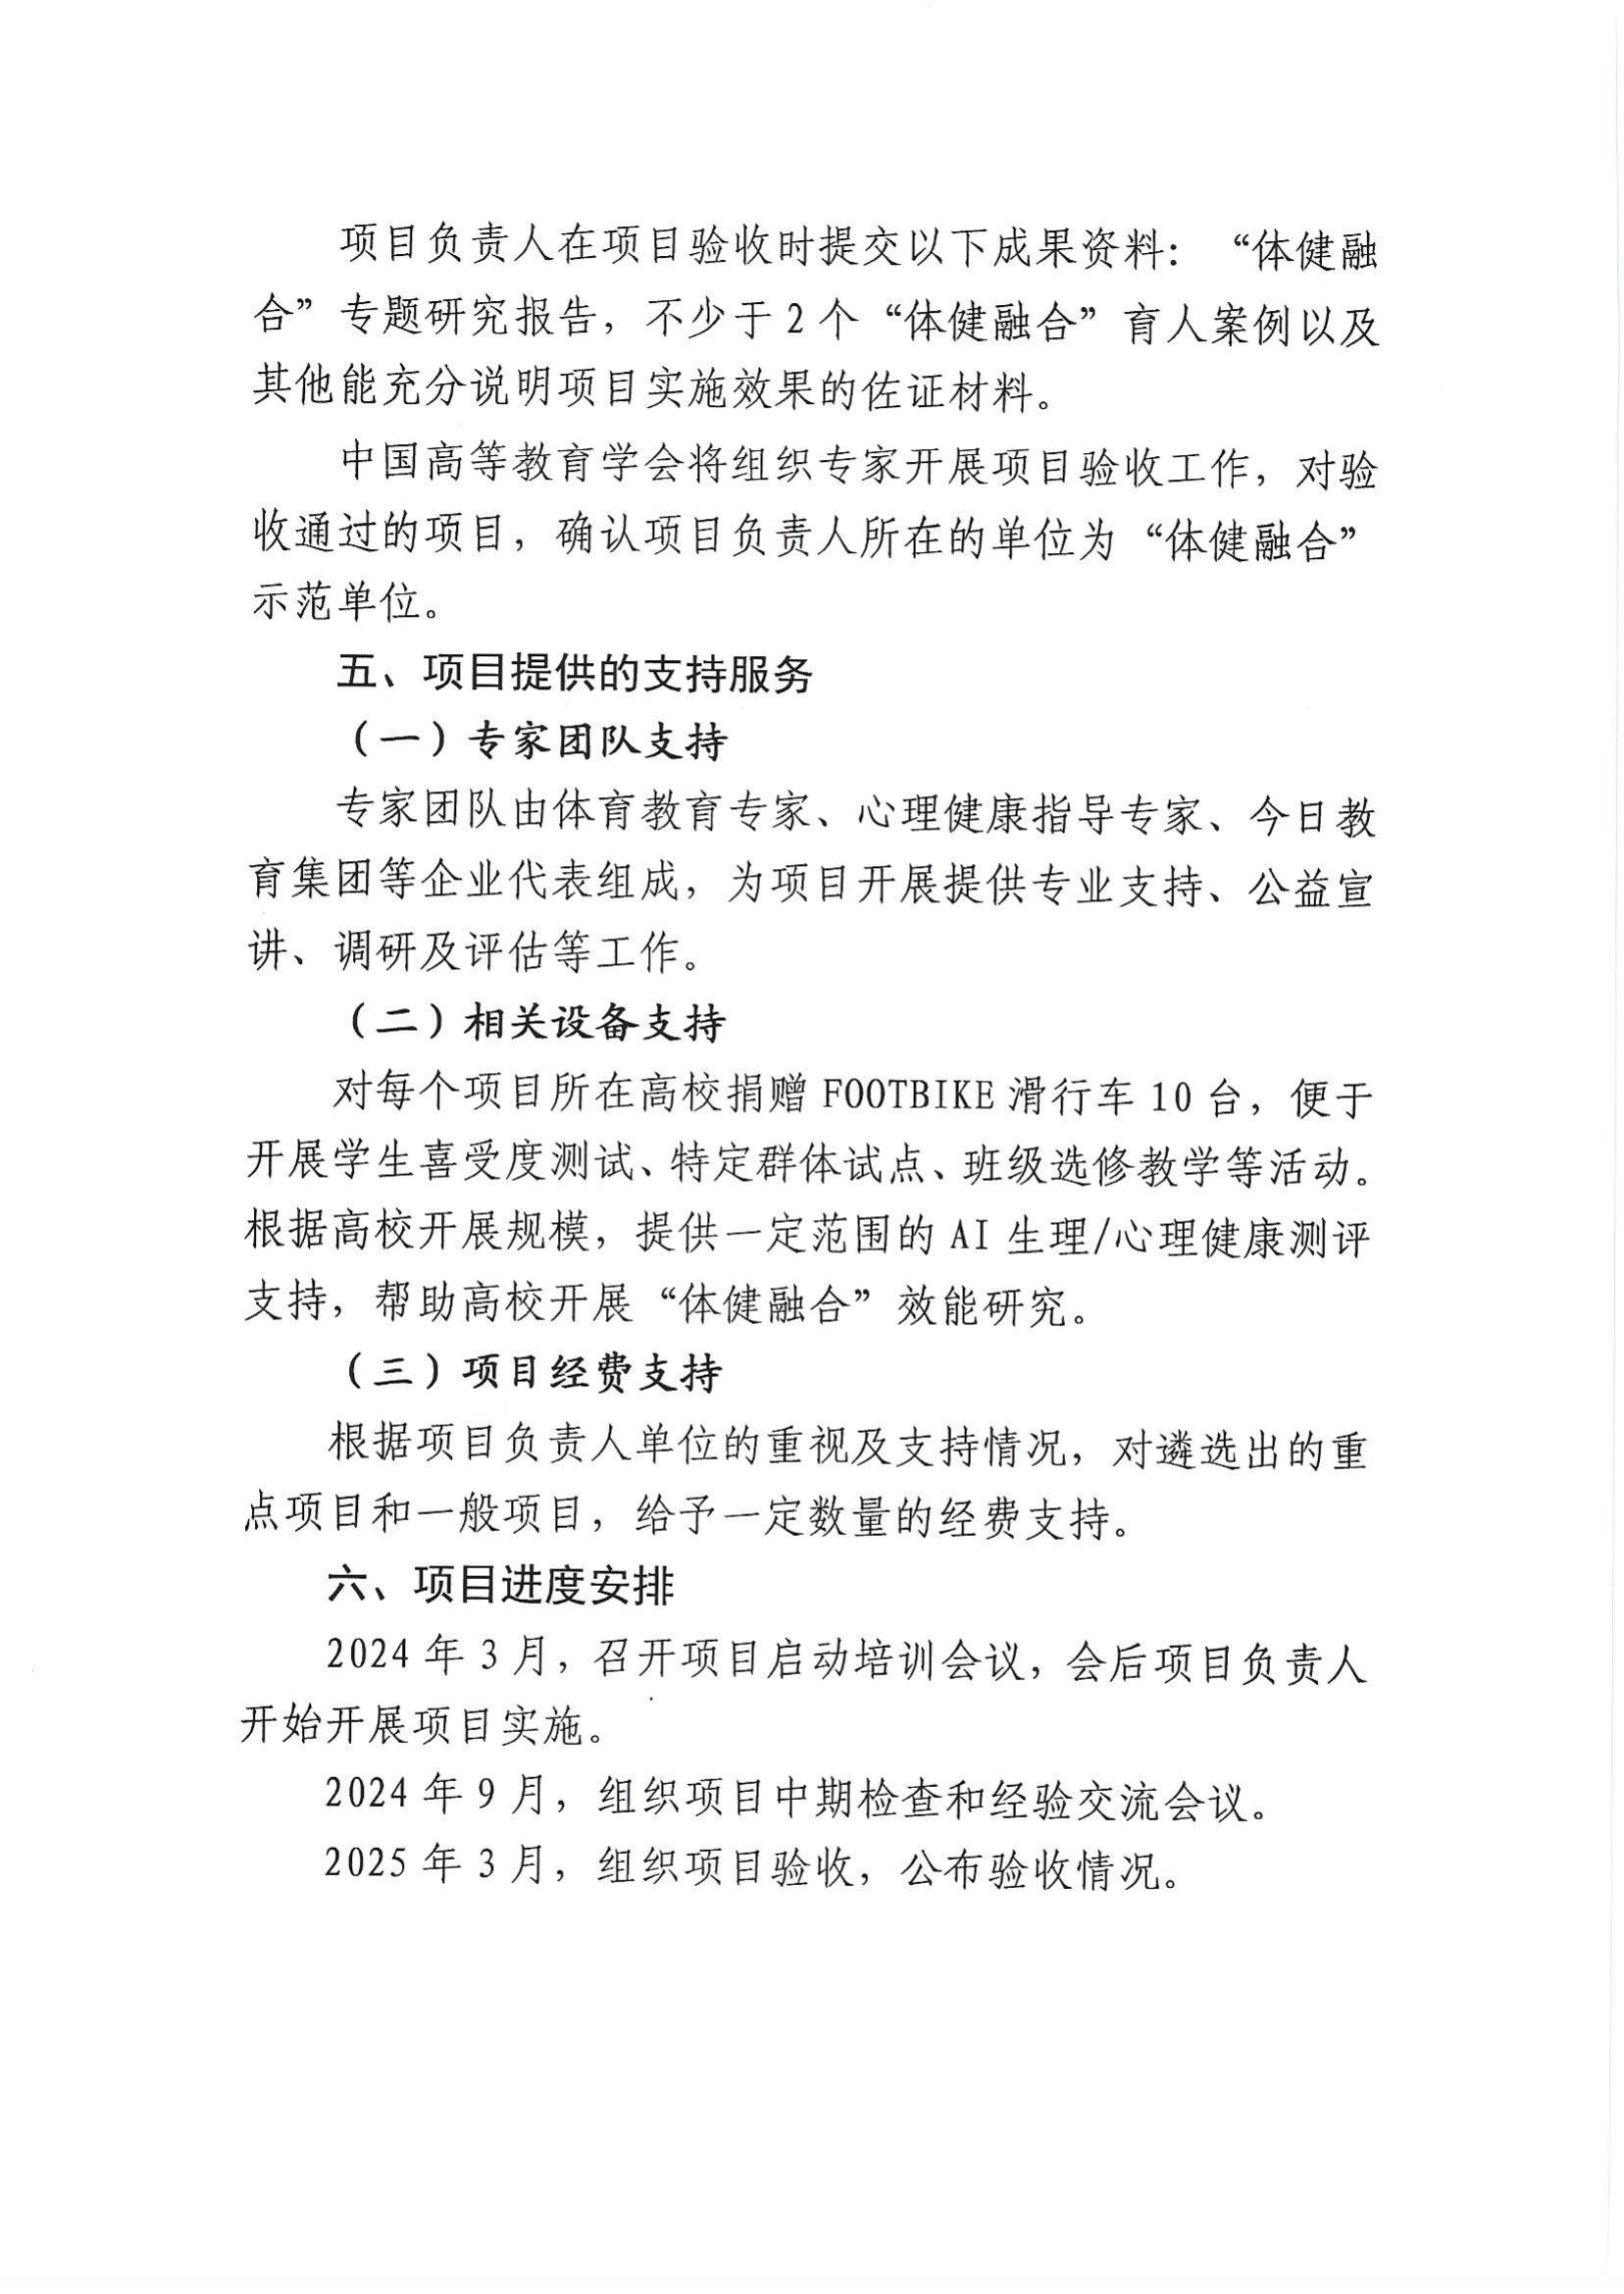 关于转发《中国高等教育学会关于组织申报2024年“体健融合”项目的通知》的通知_08.jpg